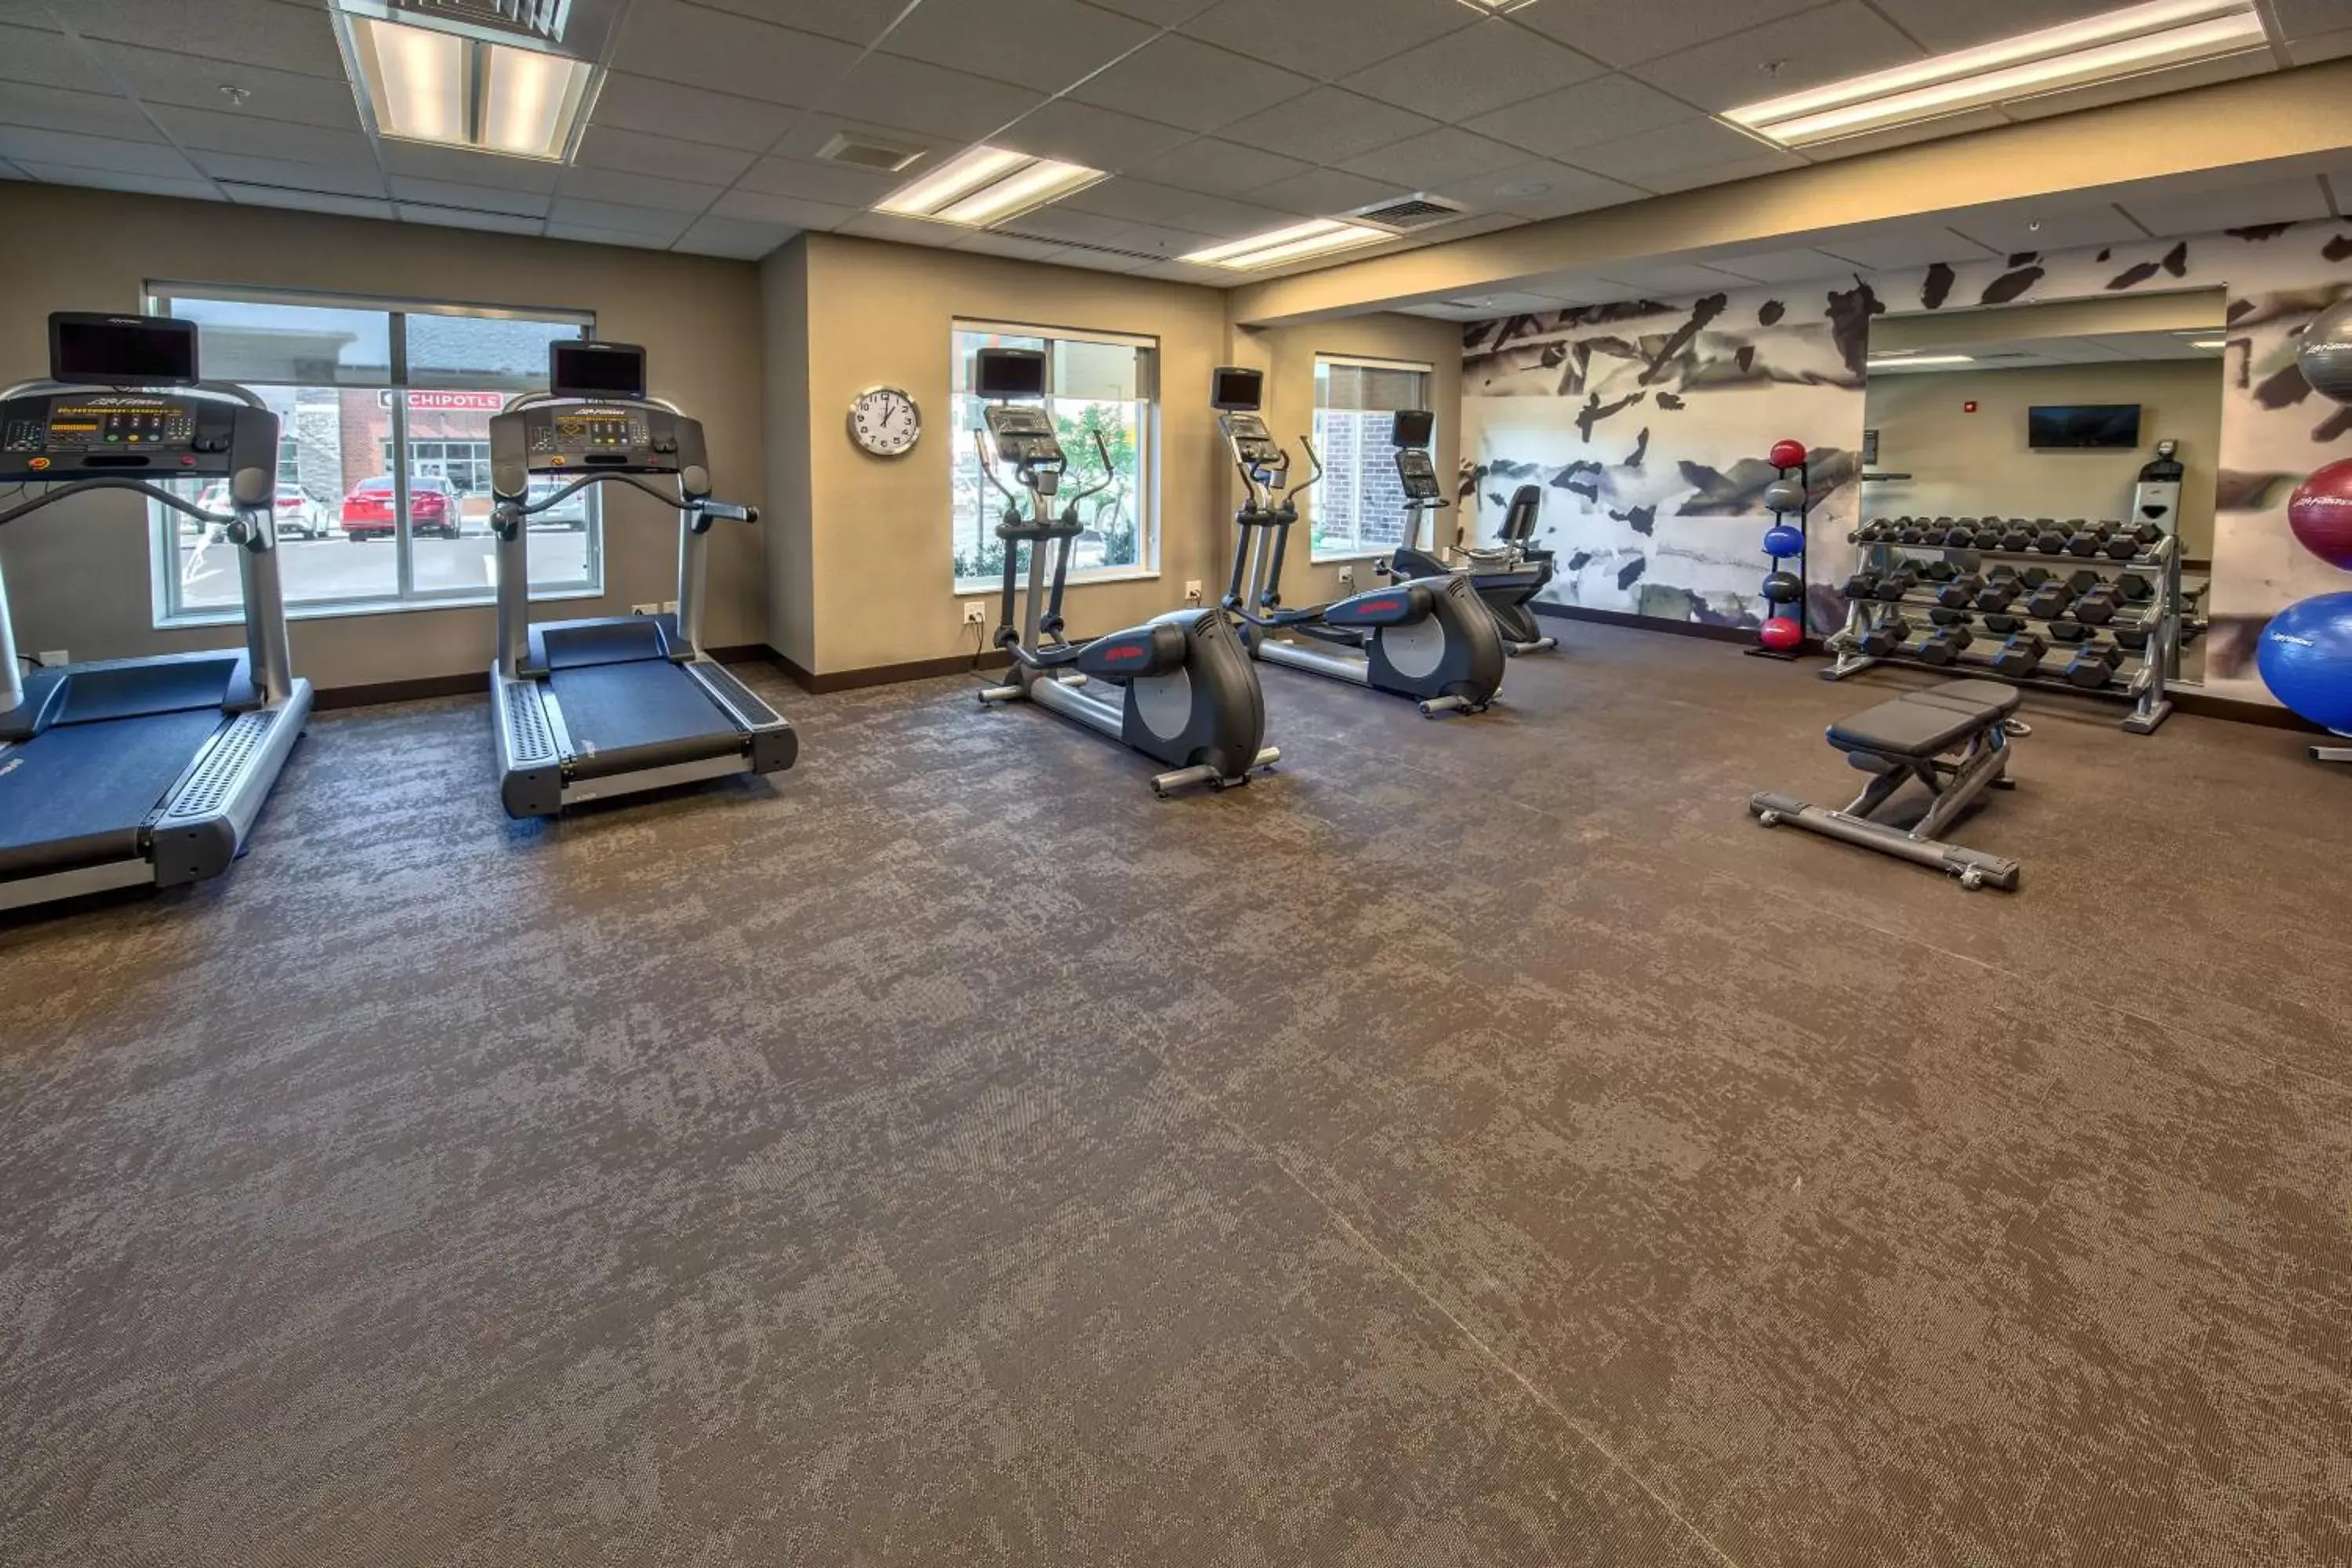 Fitness centre/facilities, Fitness Center/Facilities in Residence Inn by Marriott Blacksburg-University